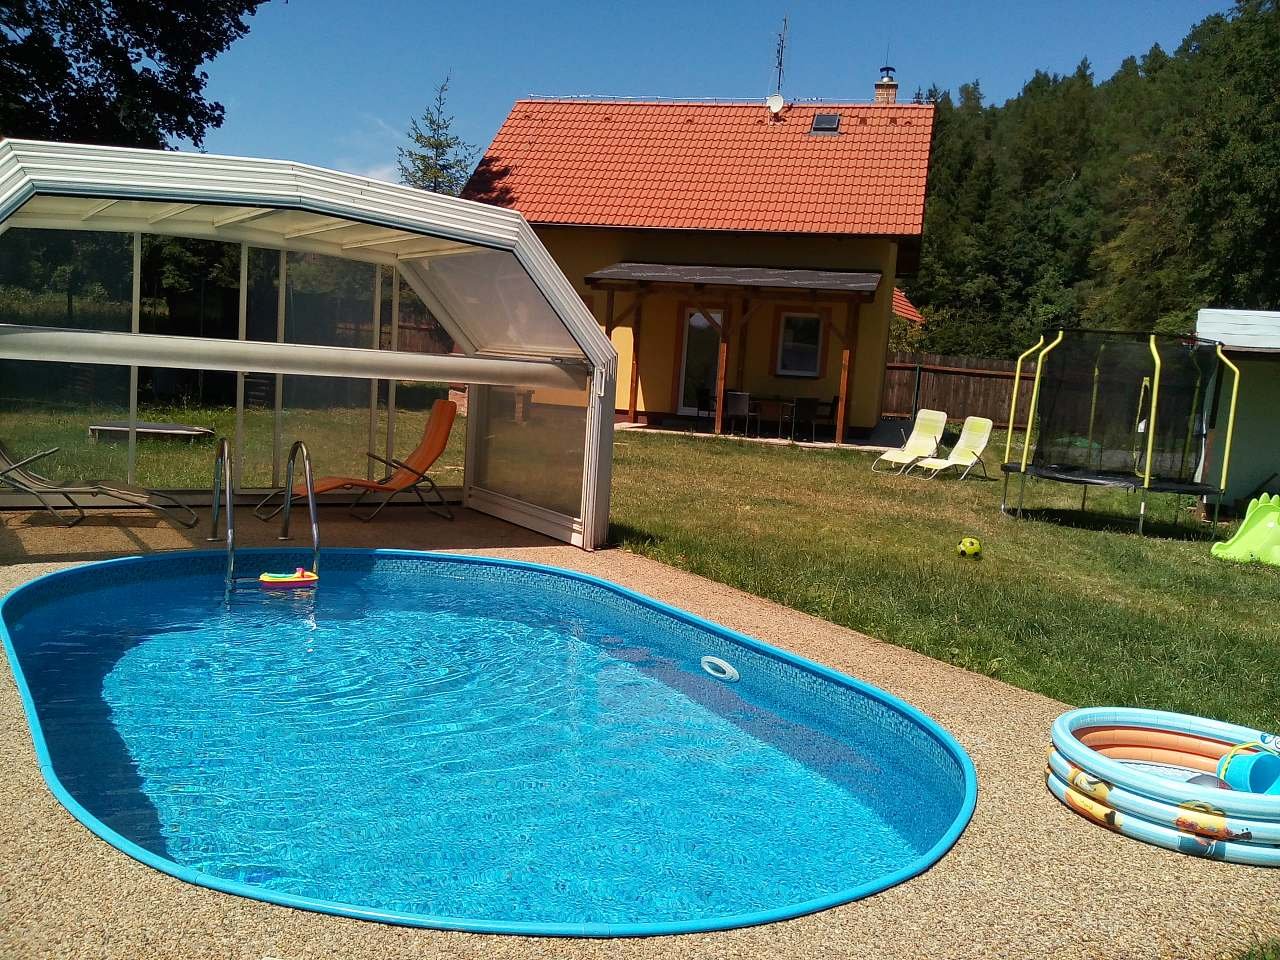 bazén a v pozadí chata